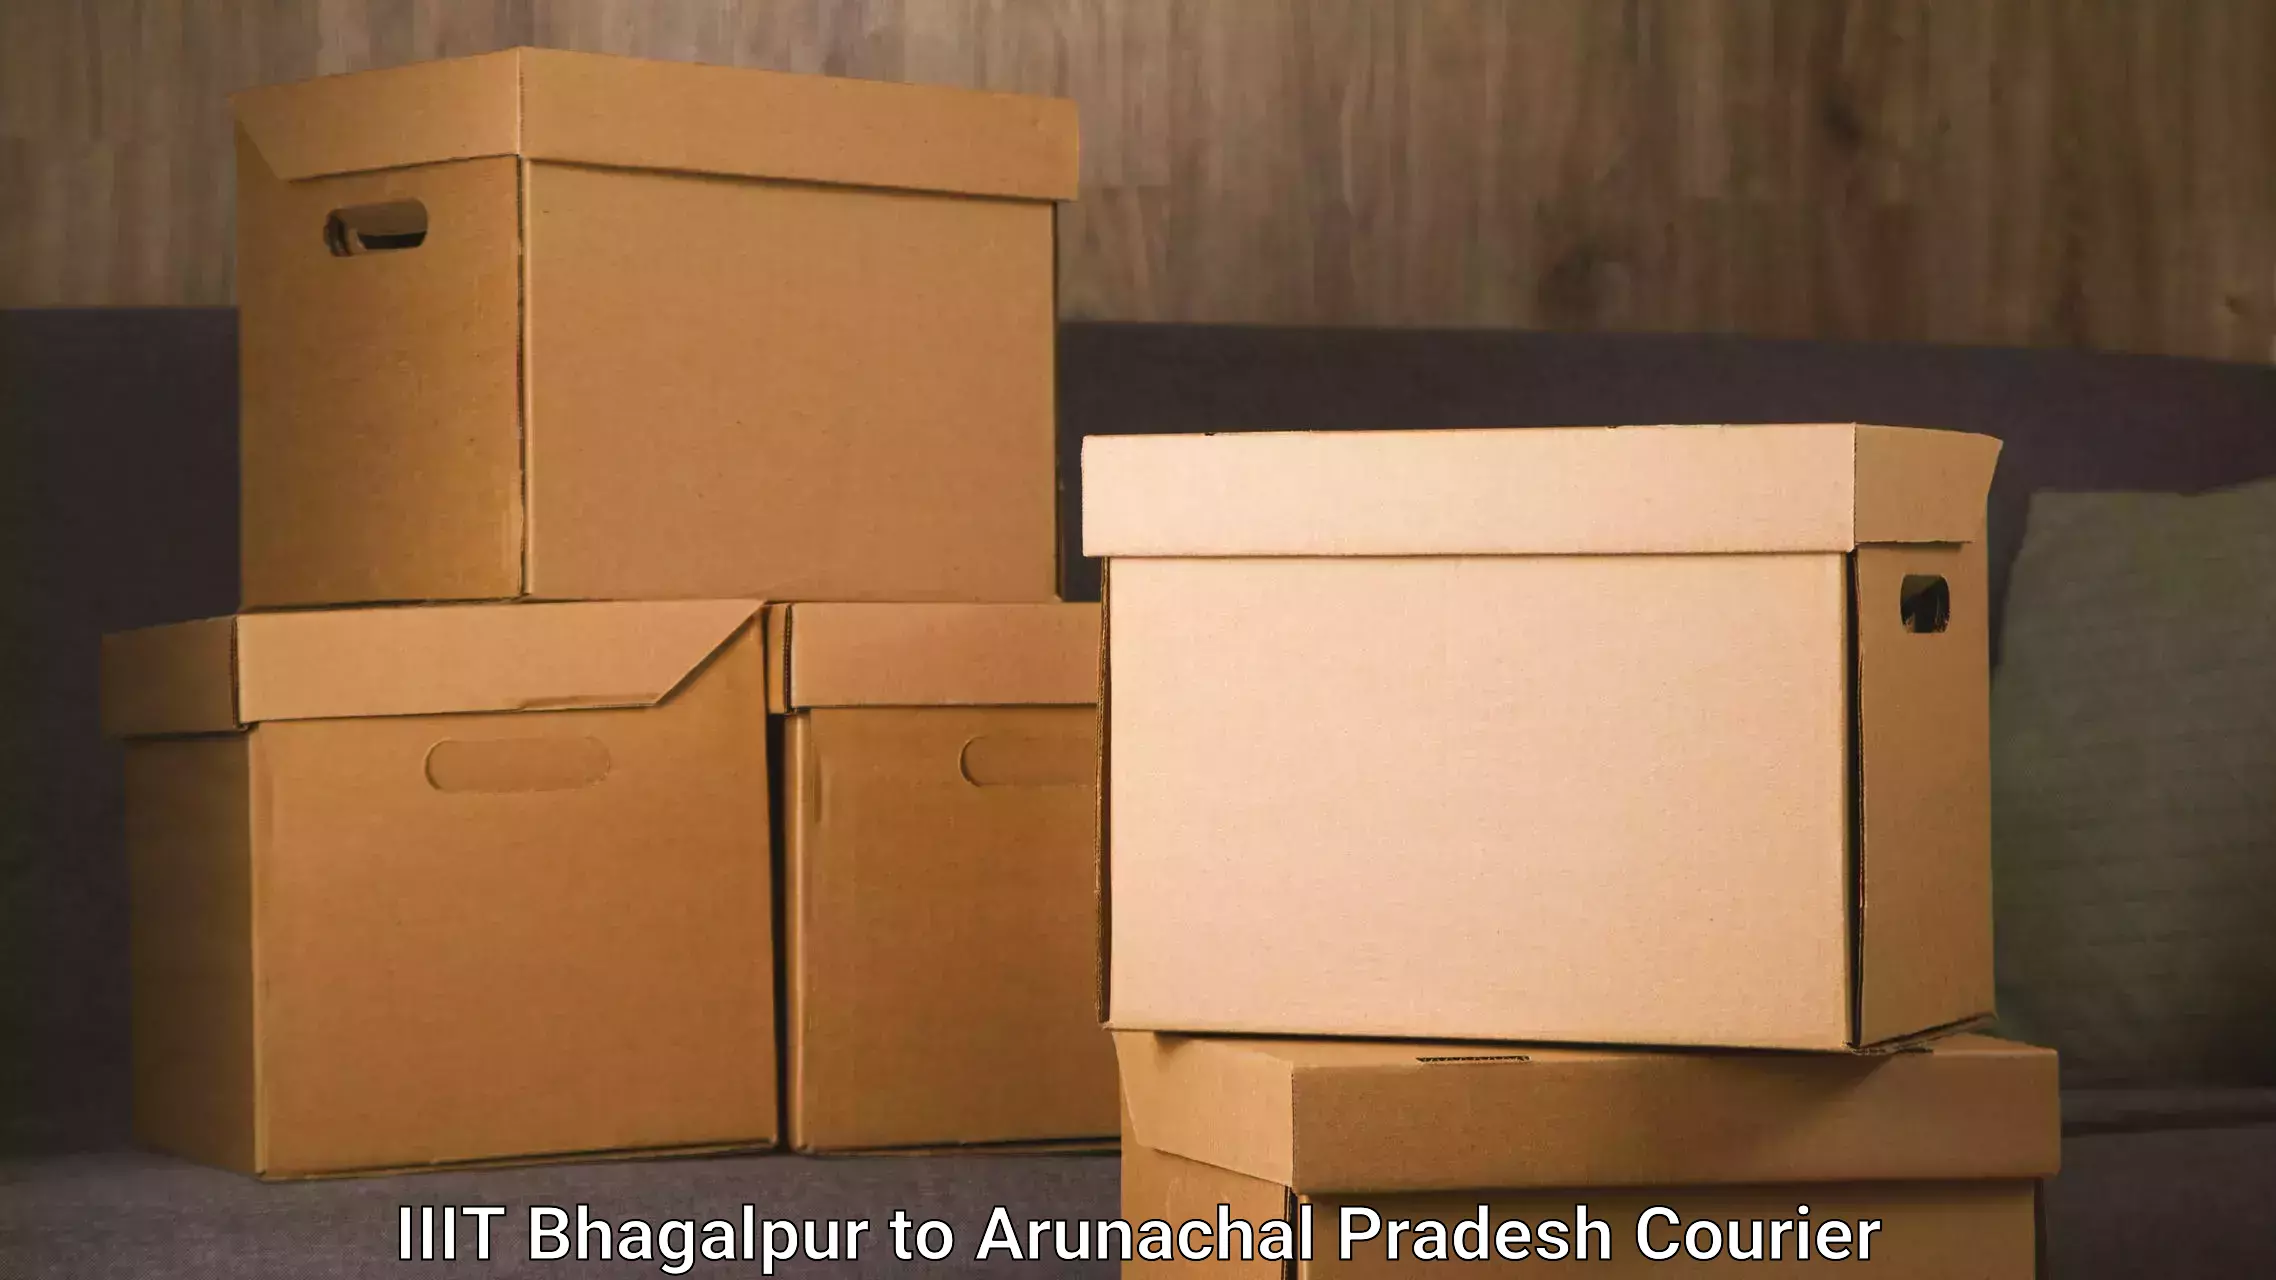 Efficient relocation services IIIT Bhagalpur to Arunachal Pradesh